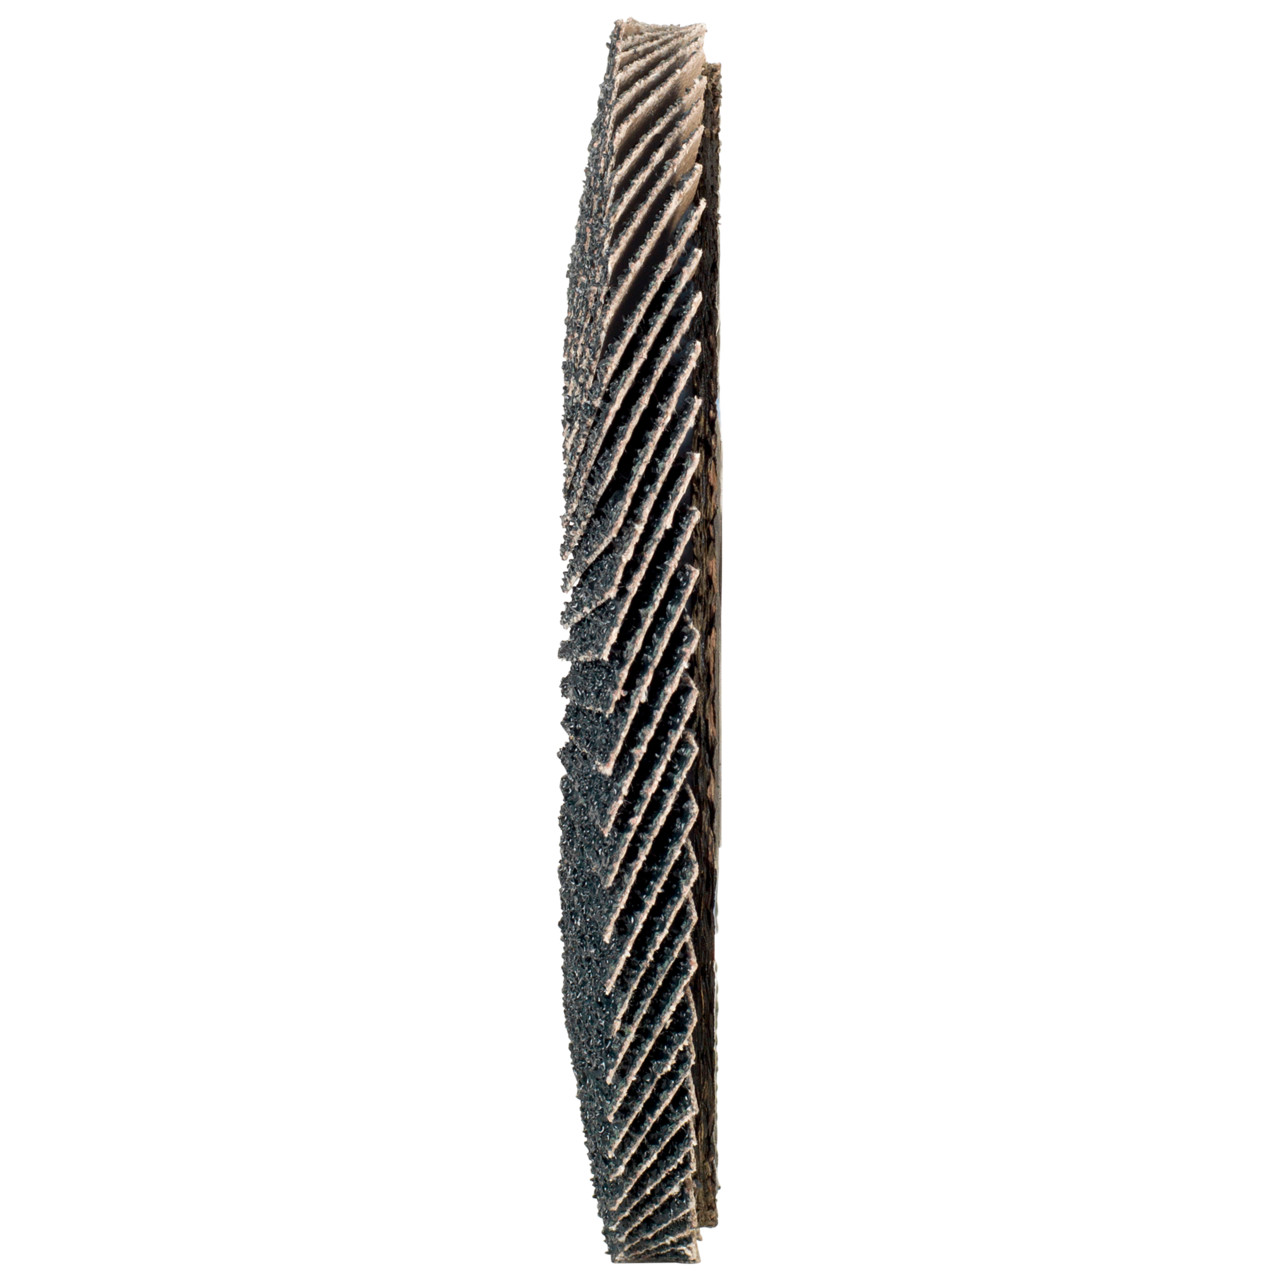 Rondella dentata Tyrolit DxH 115x22.2 2in1 per acciaio e acciaio inox, P120, forma: 27A - versione a gomito (versione con corpo portante in fibra di vetro), Art. 643803